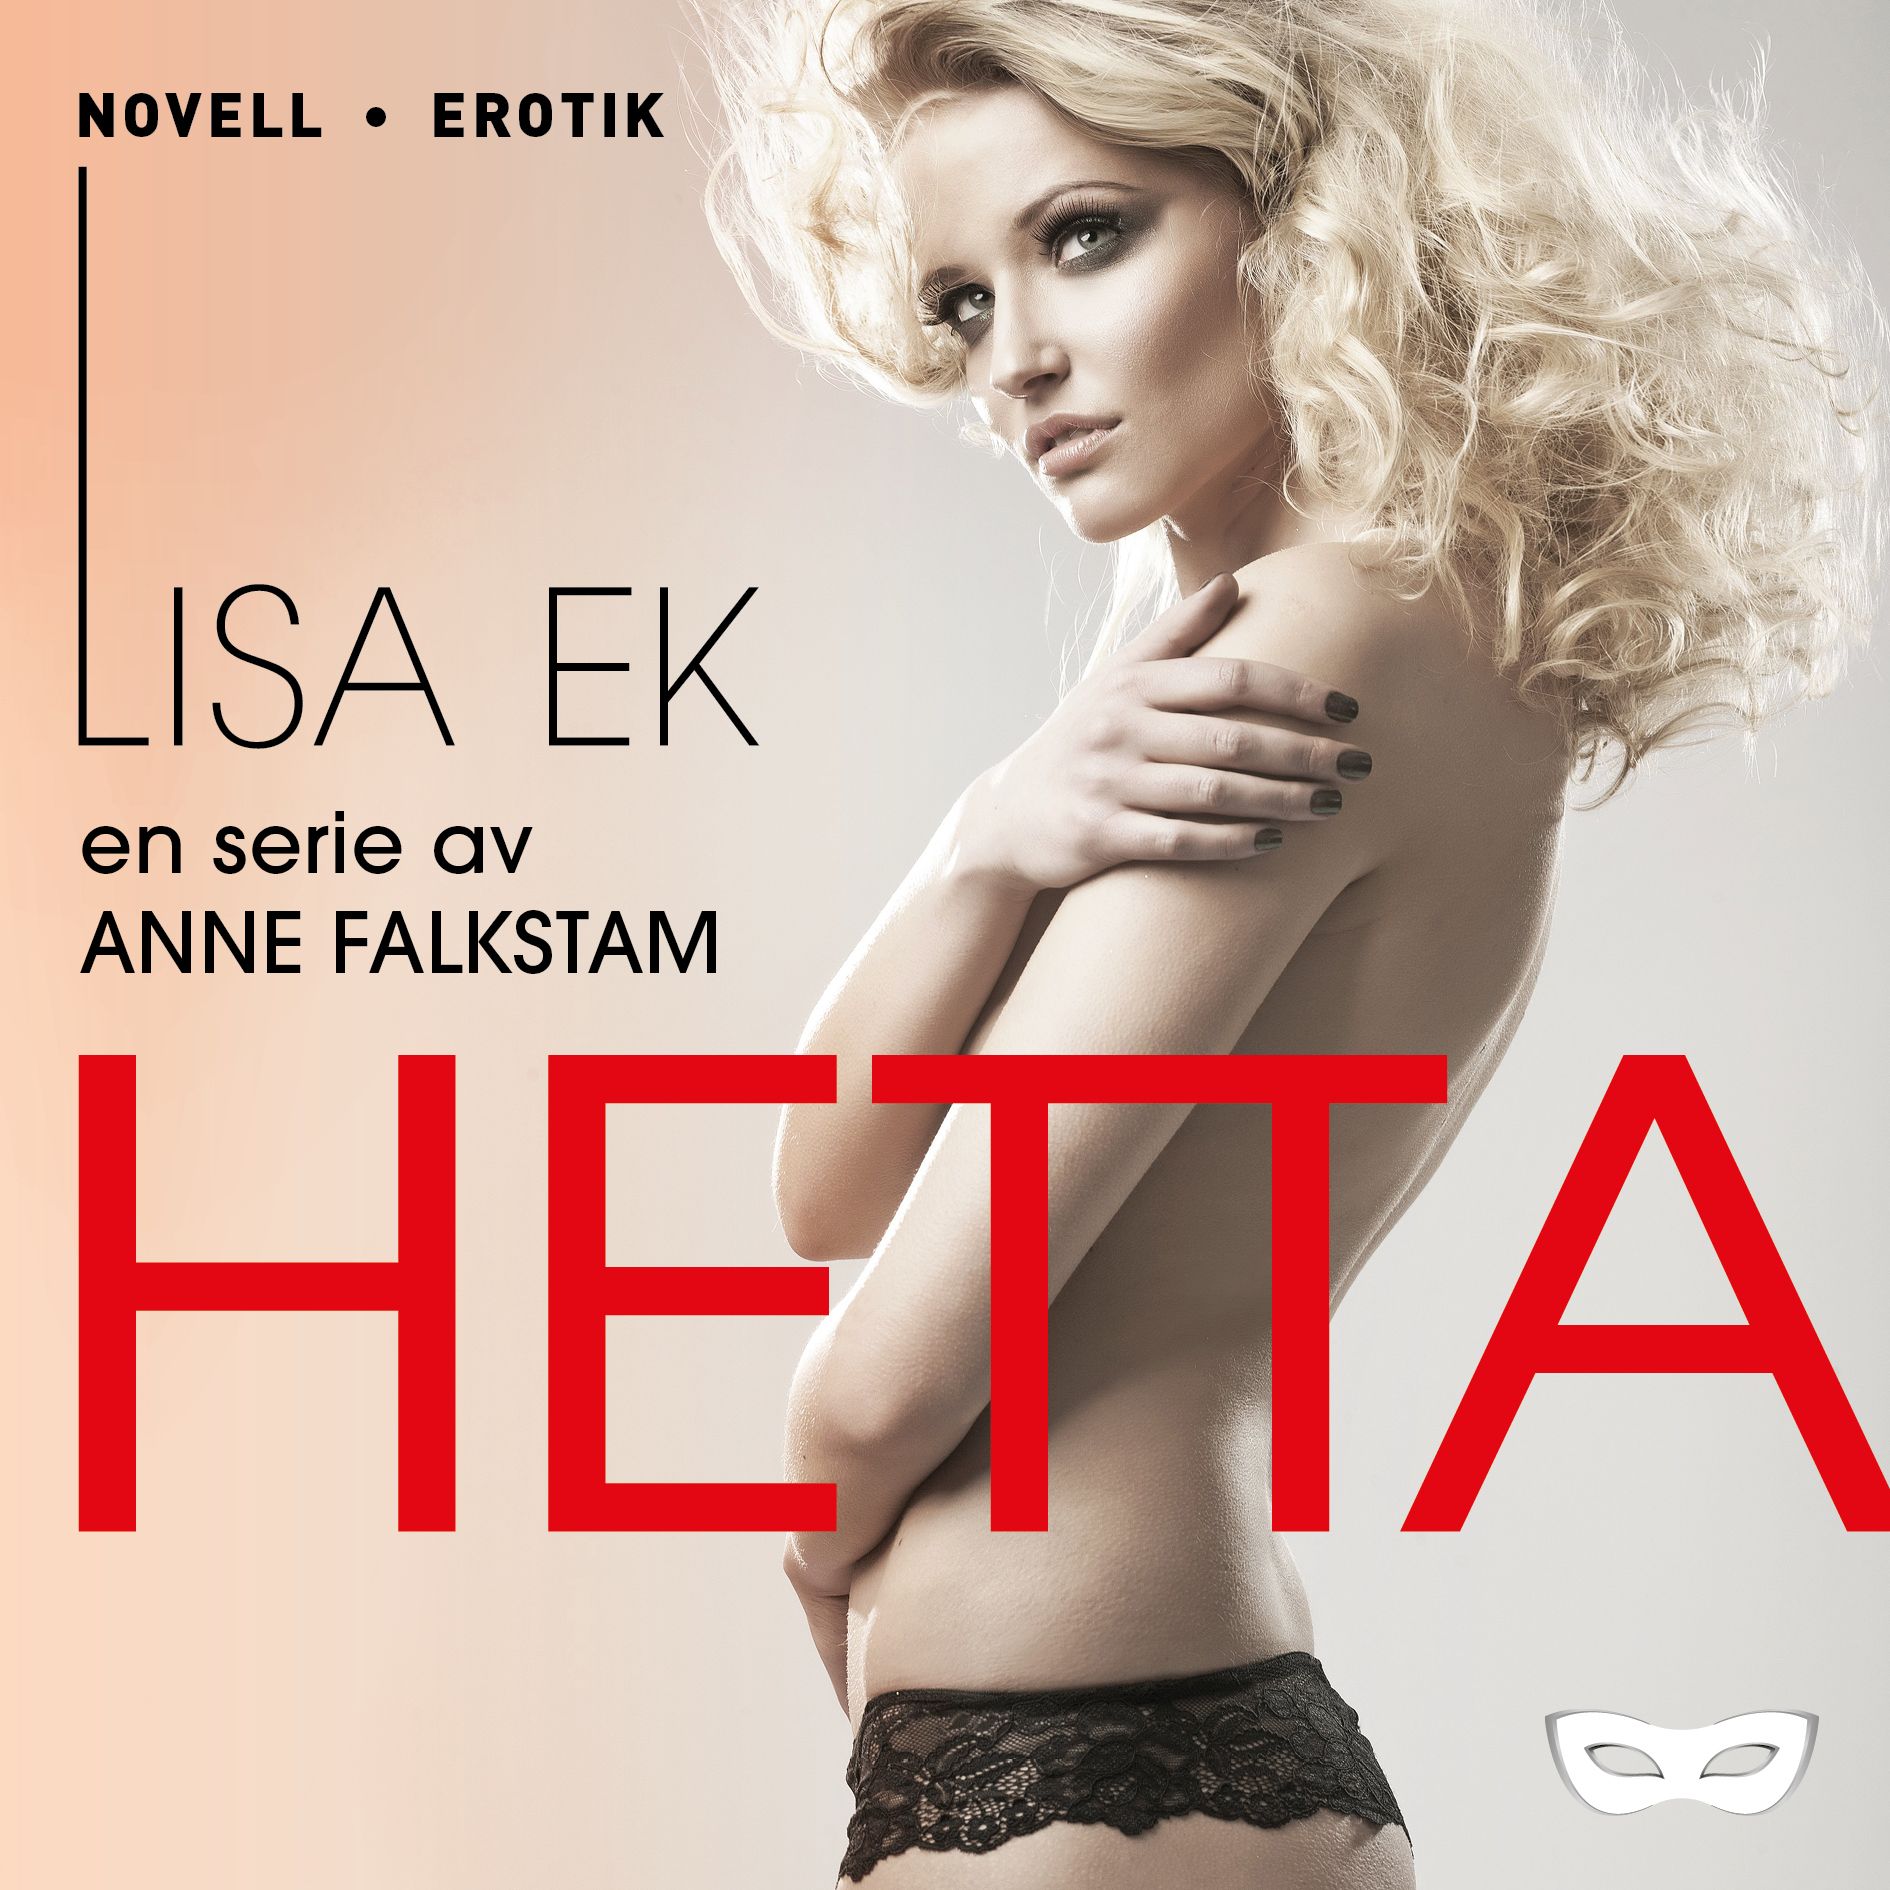 Hetta, audiobook by Anne Falkstam